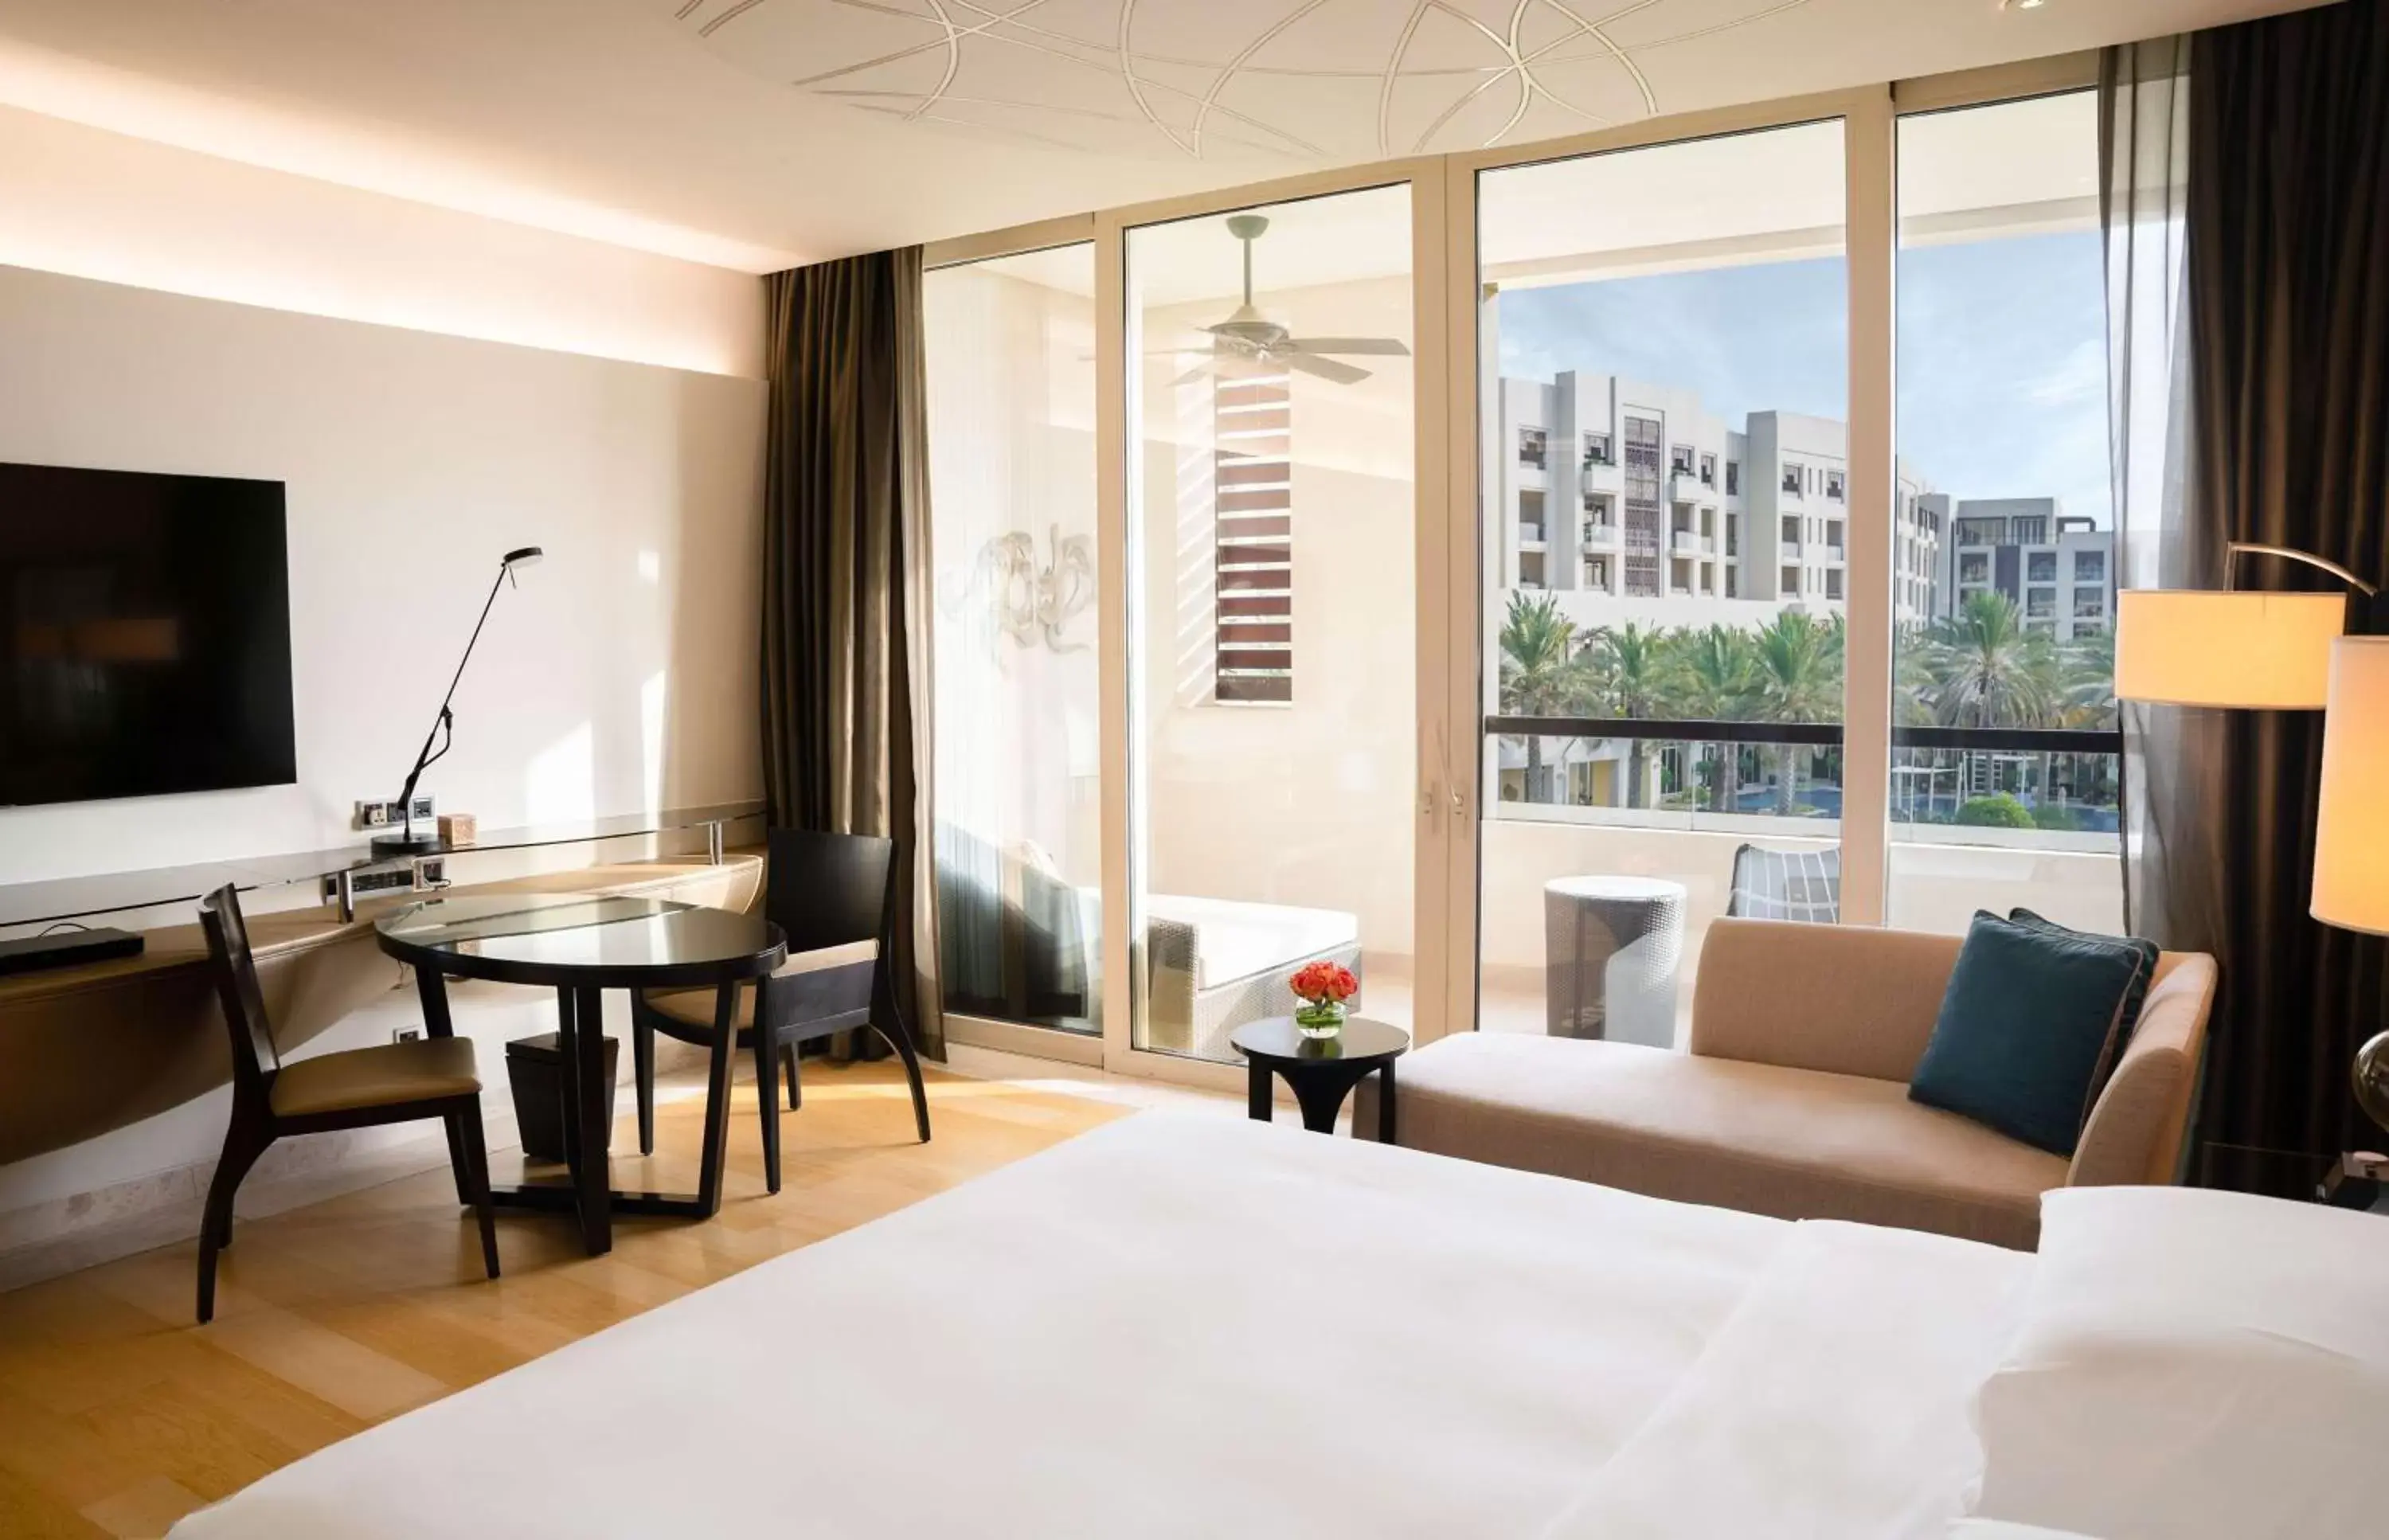 Bedroom in Park Hyatt Abu Dhabi Hotel and Villas